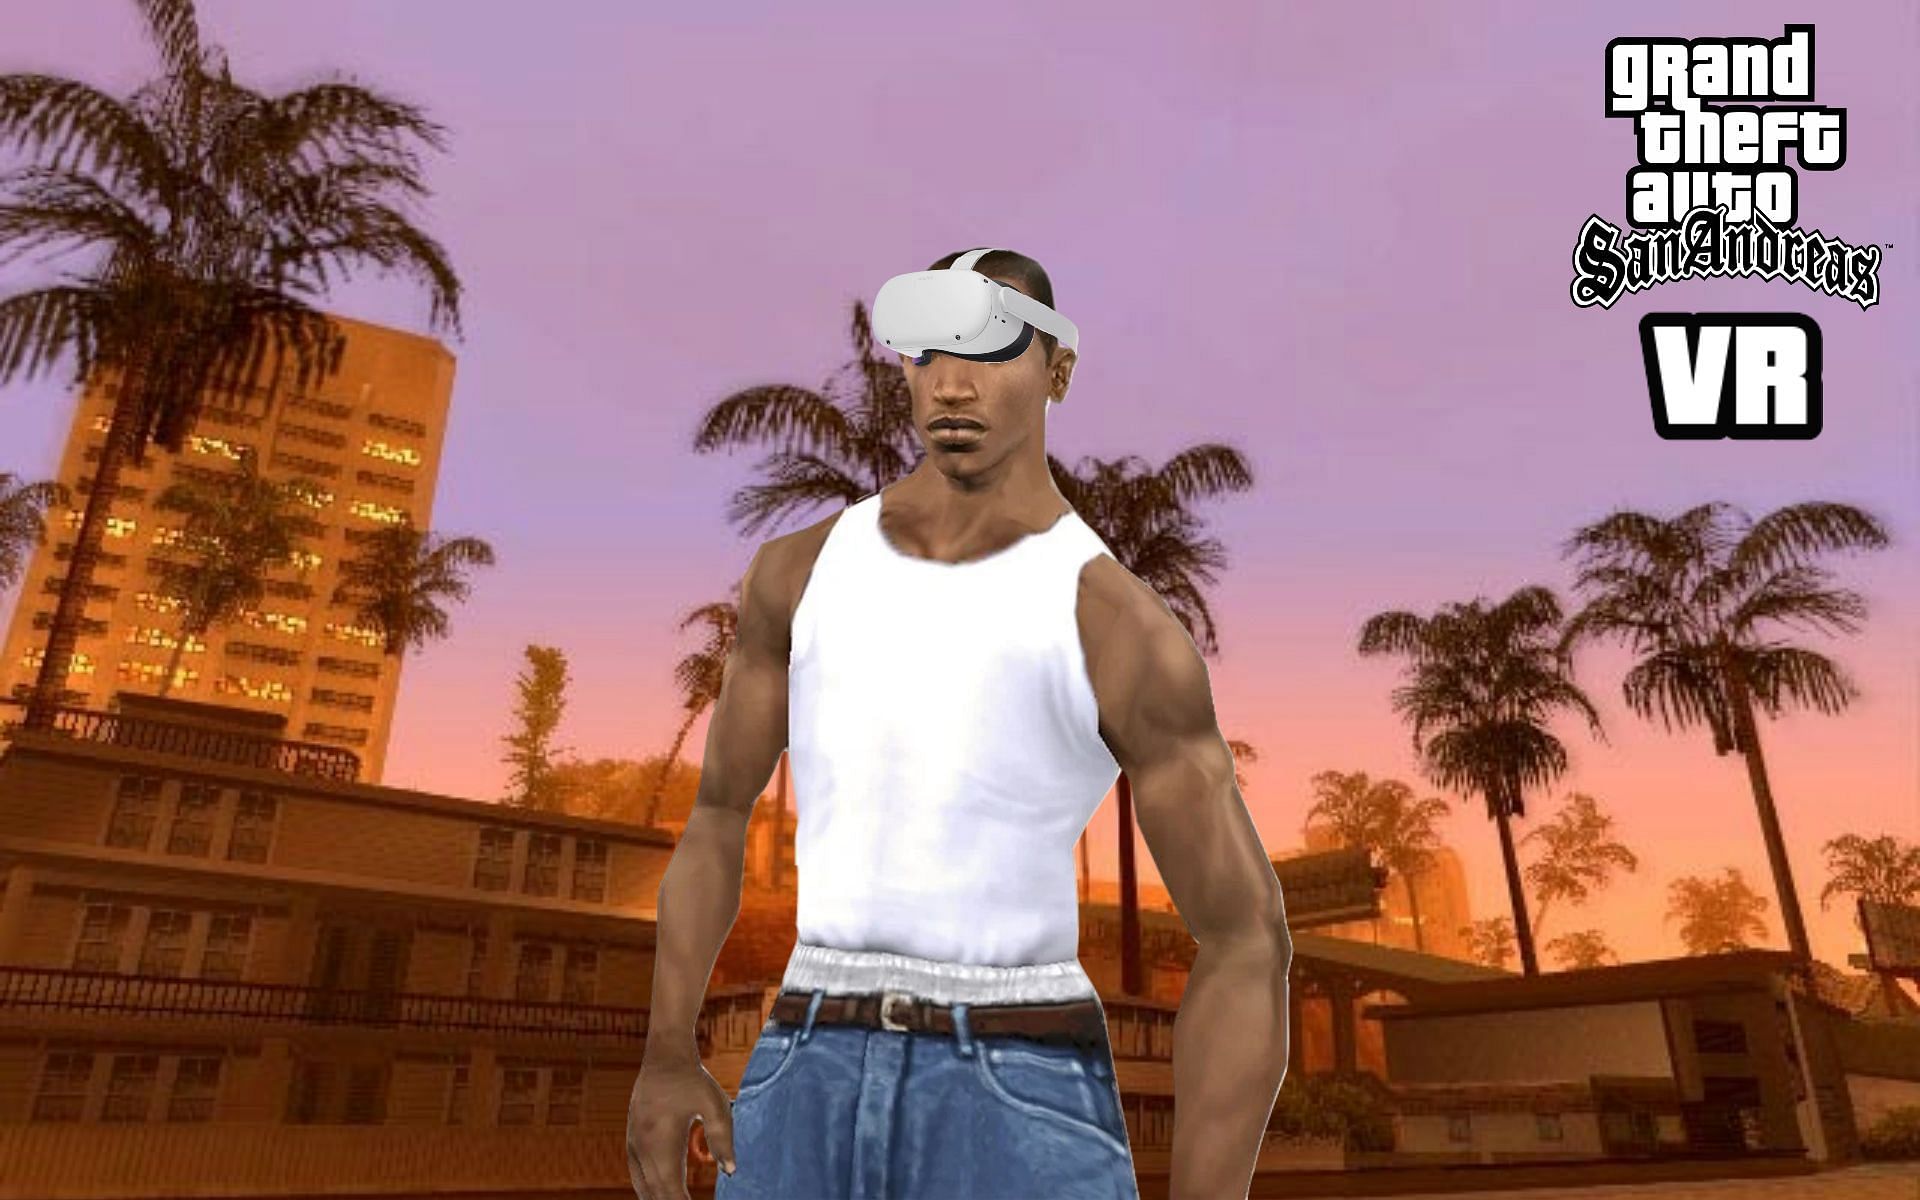 GTA San Andreas coming to VR